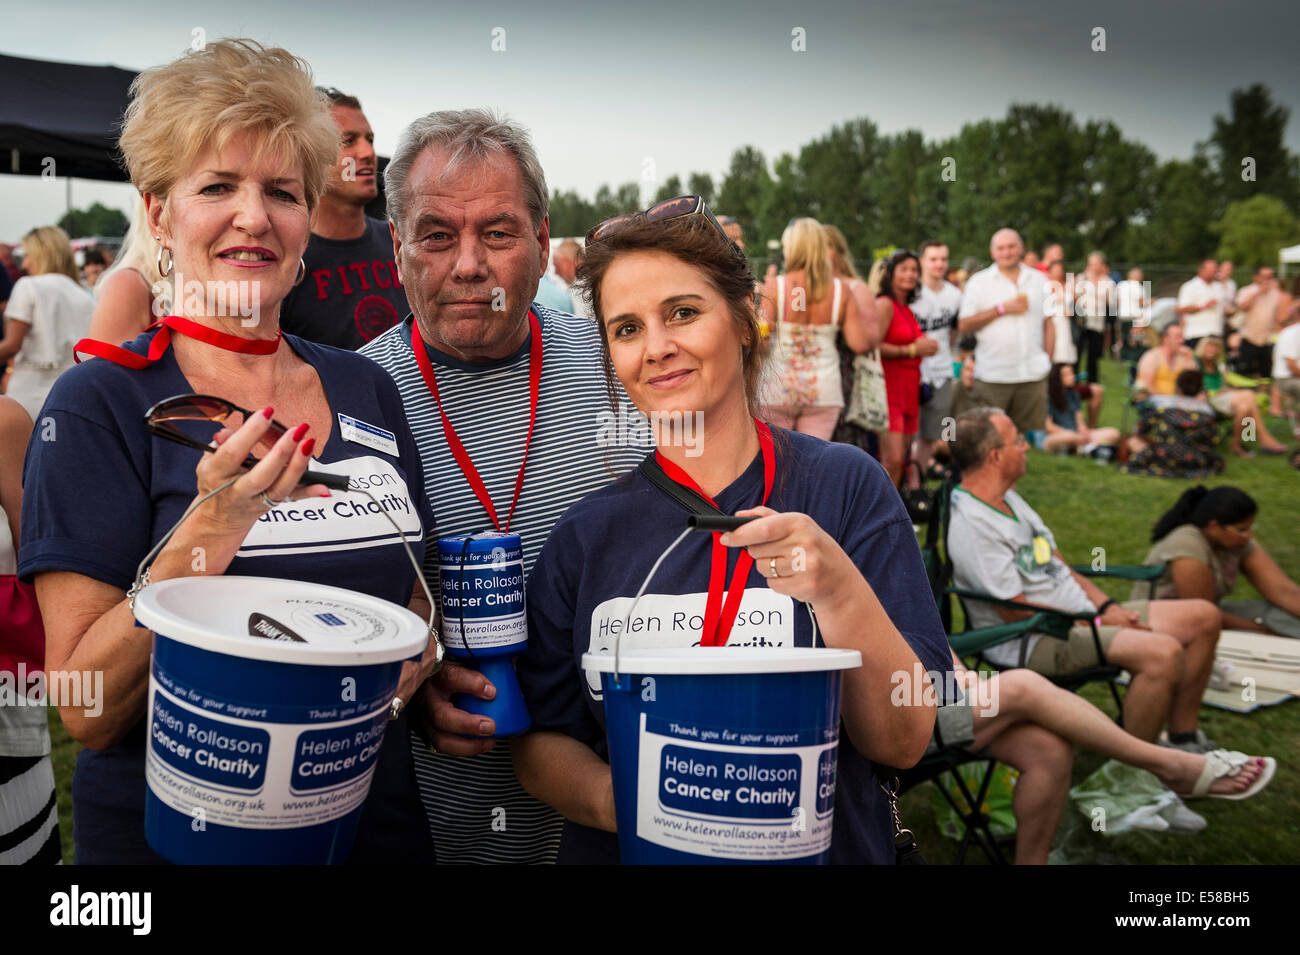 Los voluntarios de la Fundación Helen Rollason recolección para el cáncer la caridad en el Brentwood Festival. Foto de stock